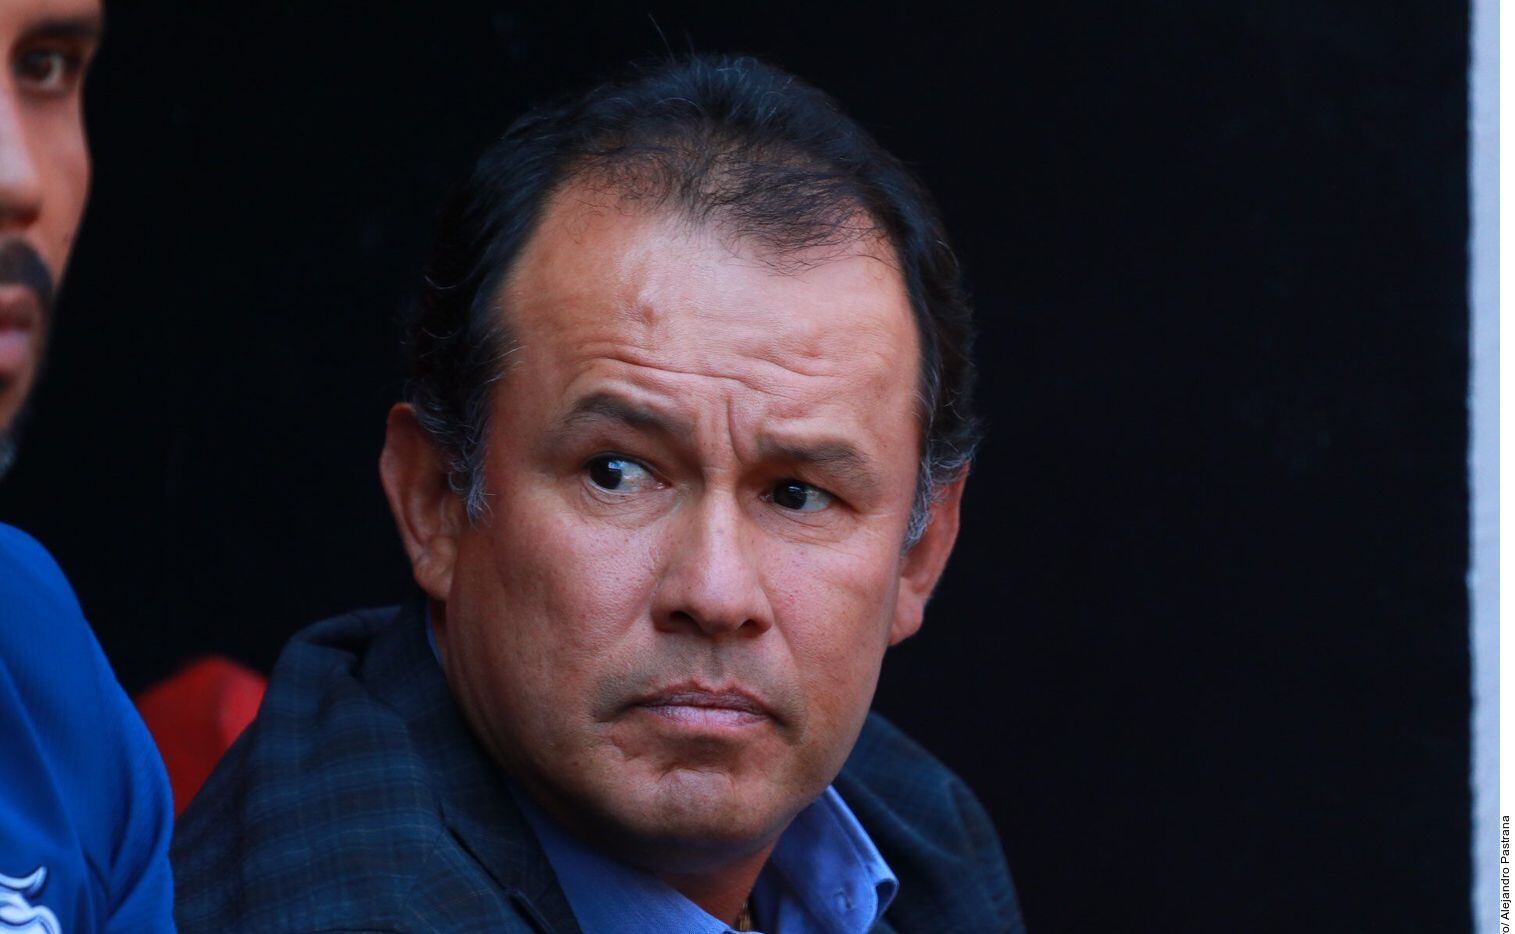 El entrenador peruano Juan Reynoso sacó campeón a Cruz Azul, luego de 23 años de sequía de...